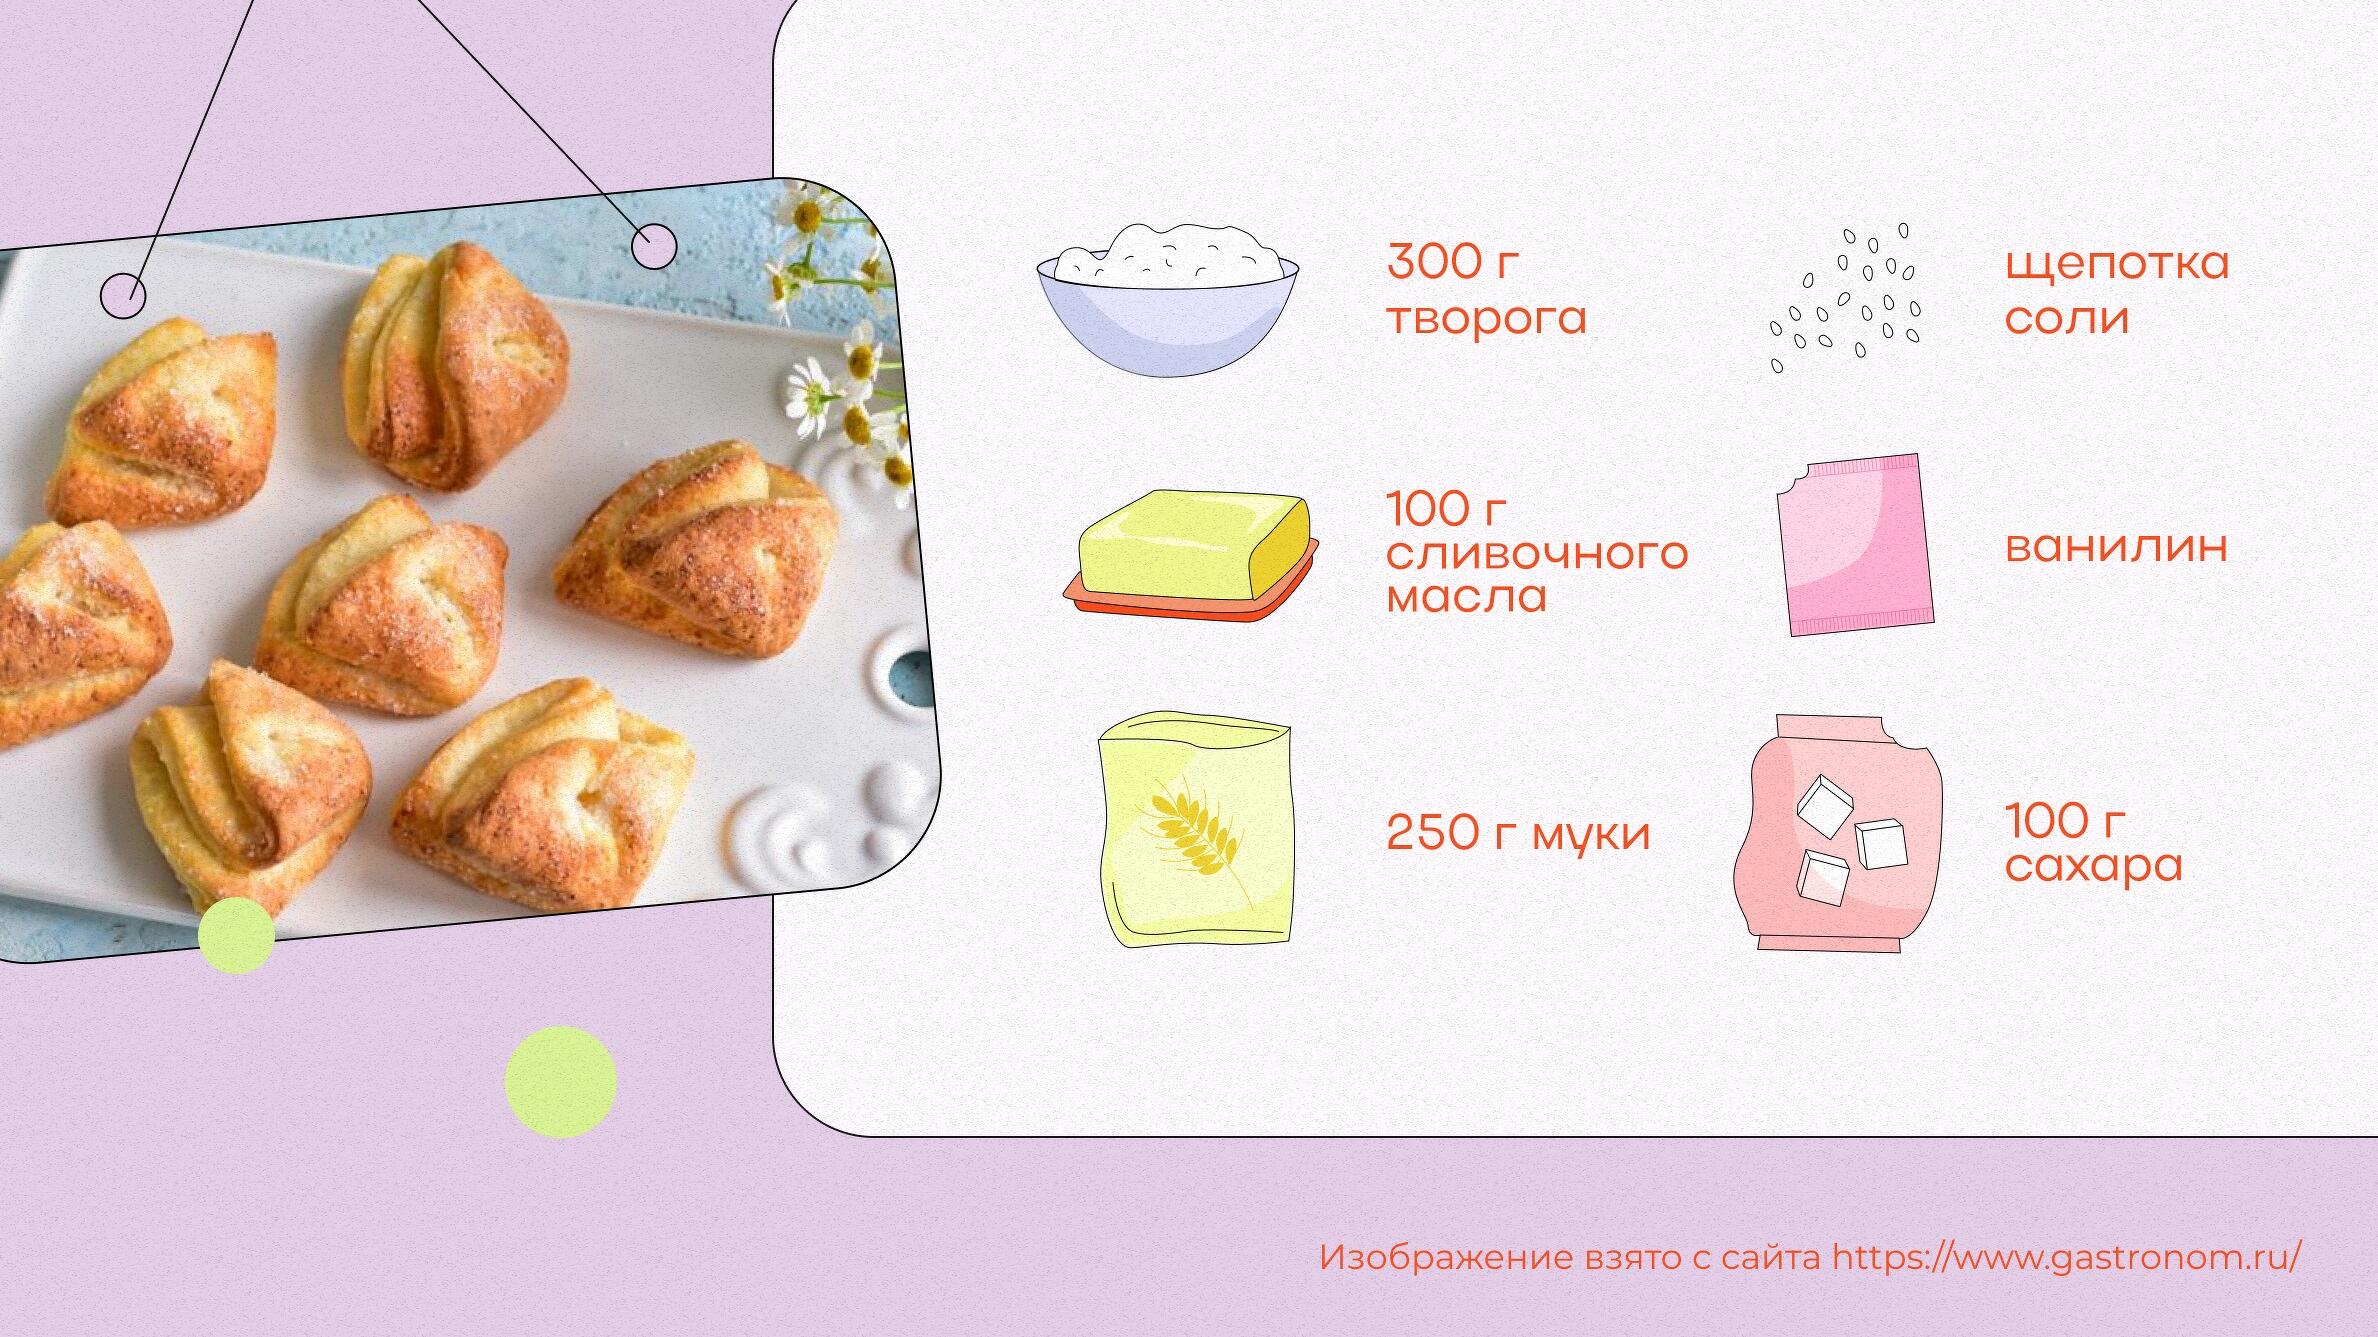 15 простых рецептов печенья в домашних условиях | Рецепт | Идеи для блюд, Песочное печенье, Печенье